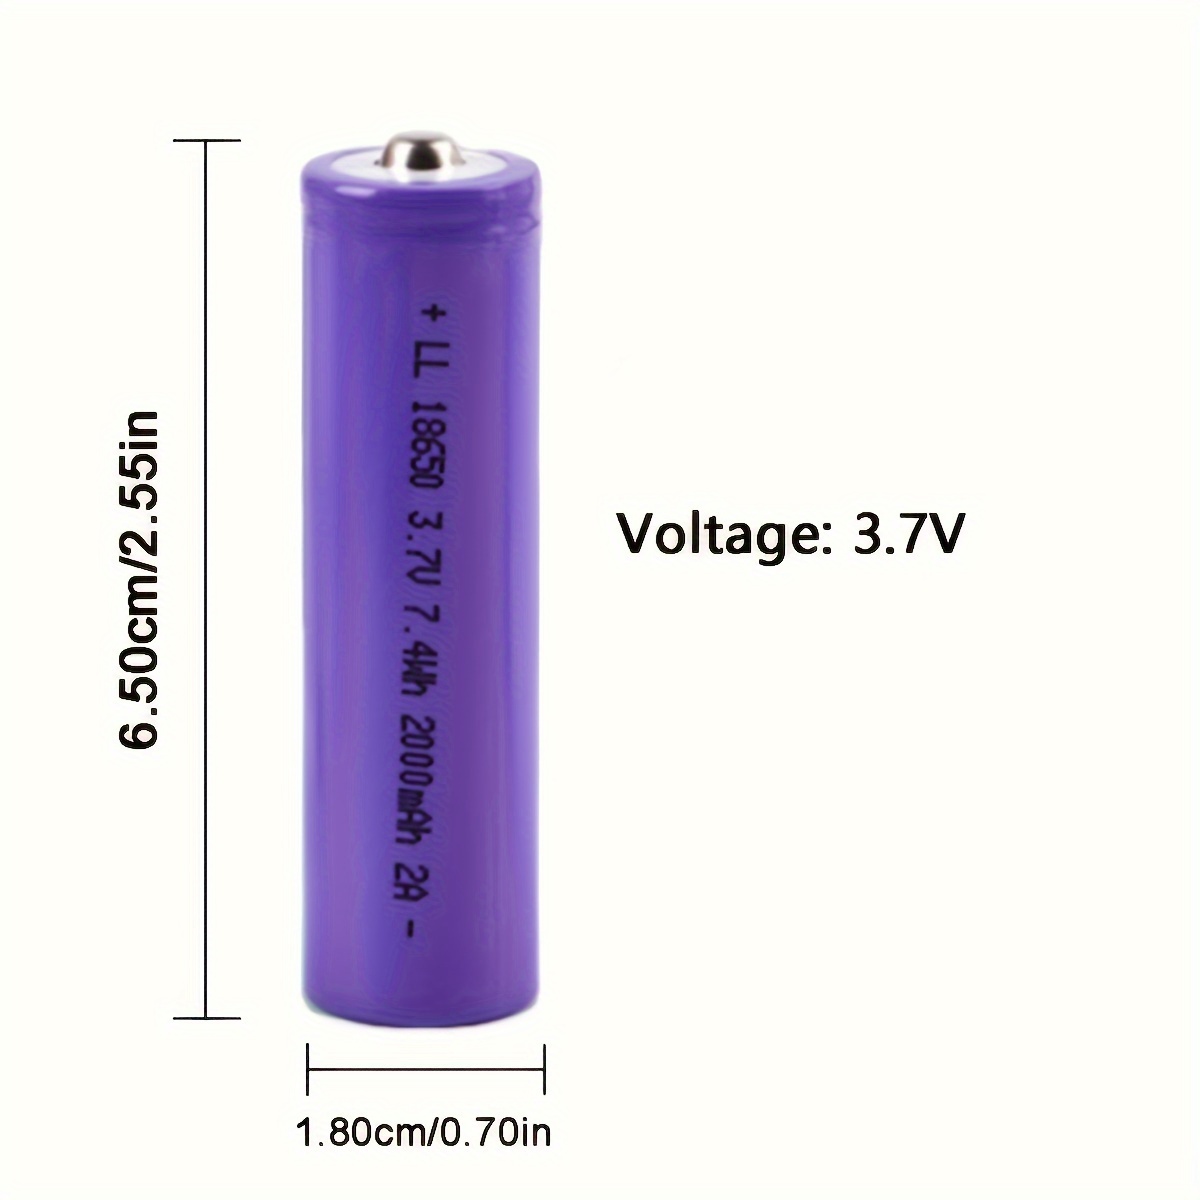  Juego de cargador de batería 18650, batería recargable de 3.7 V  para linternas, faros, ventiladores, cámaras digitales, juguetes, radios,  altavoces, equipo de vigilancia (paquete de 4 baterías) : Automotriz